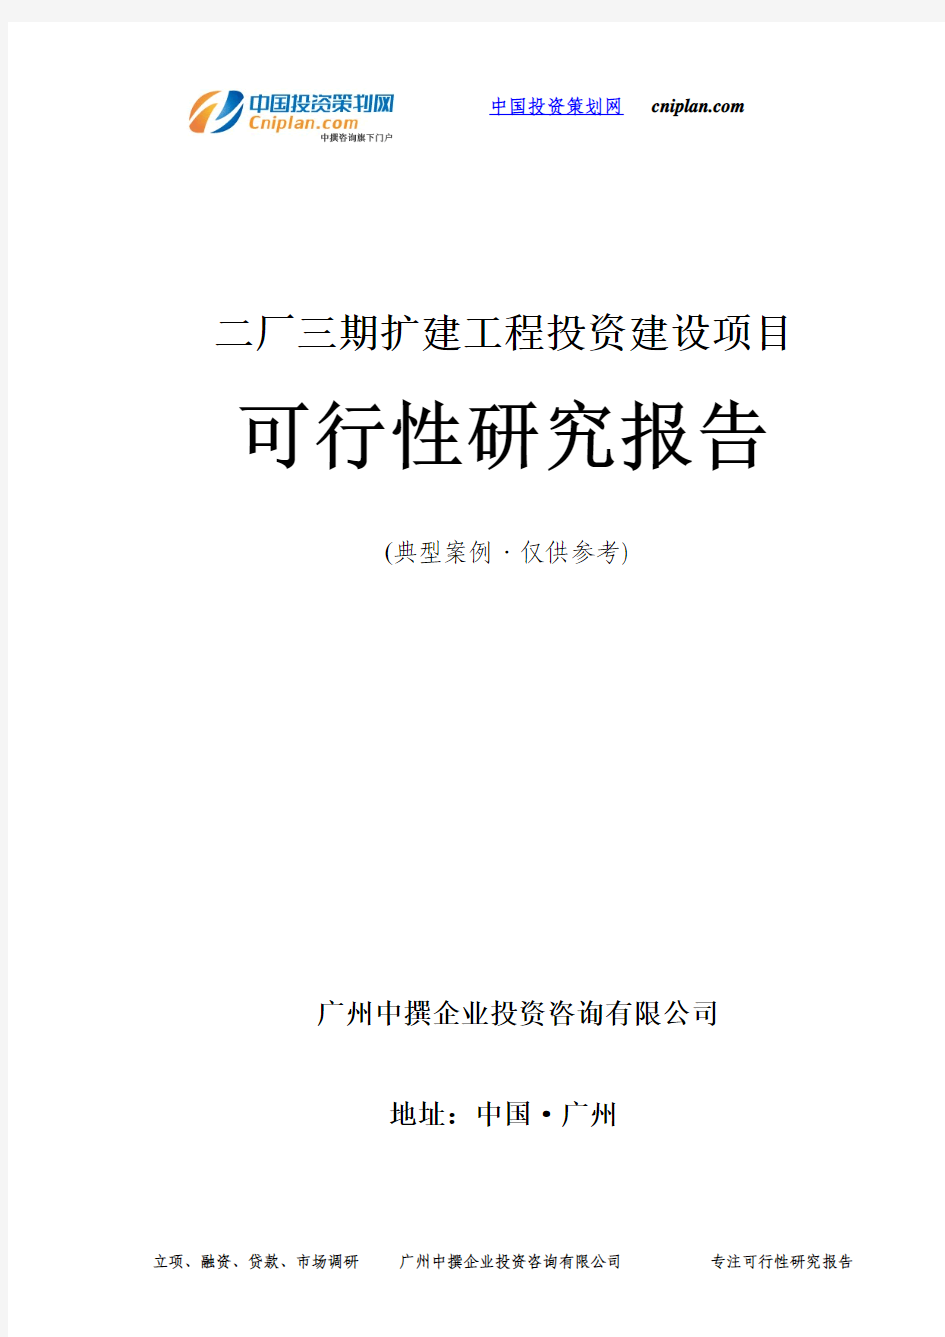 二厂三期扩建工程投资建设项目可行性研究报告-广州中撰咨询